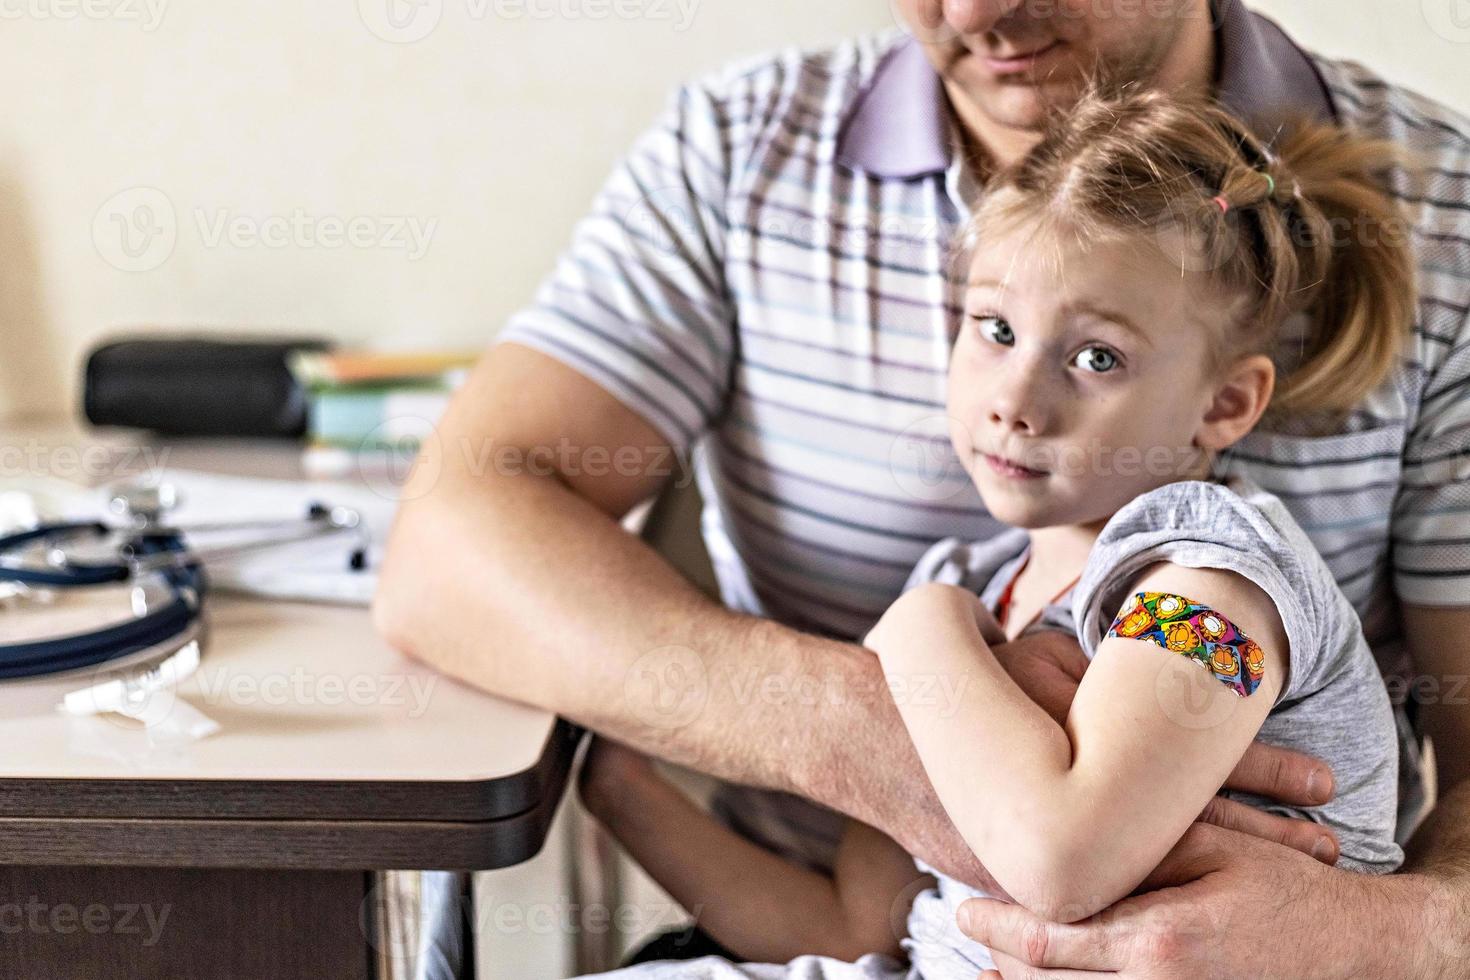 vacinação de uma menina nos braços do pai no consultório do médico contra o coronavírus. gesso adesivo engraçado infantil. vacina contra covid-19, gripe, doenças infecciosas. foto